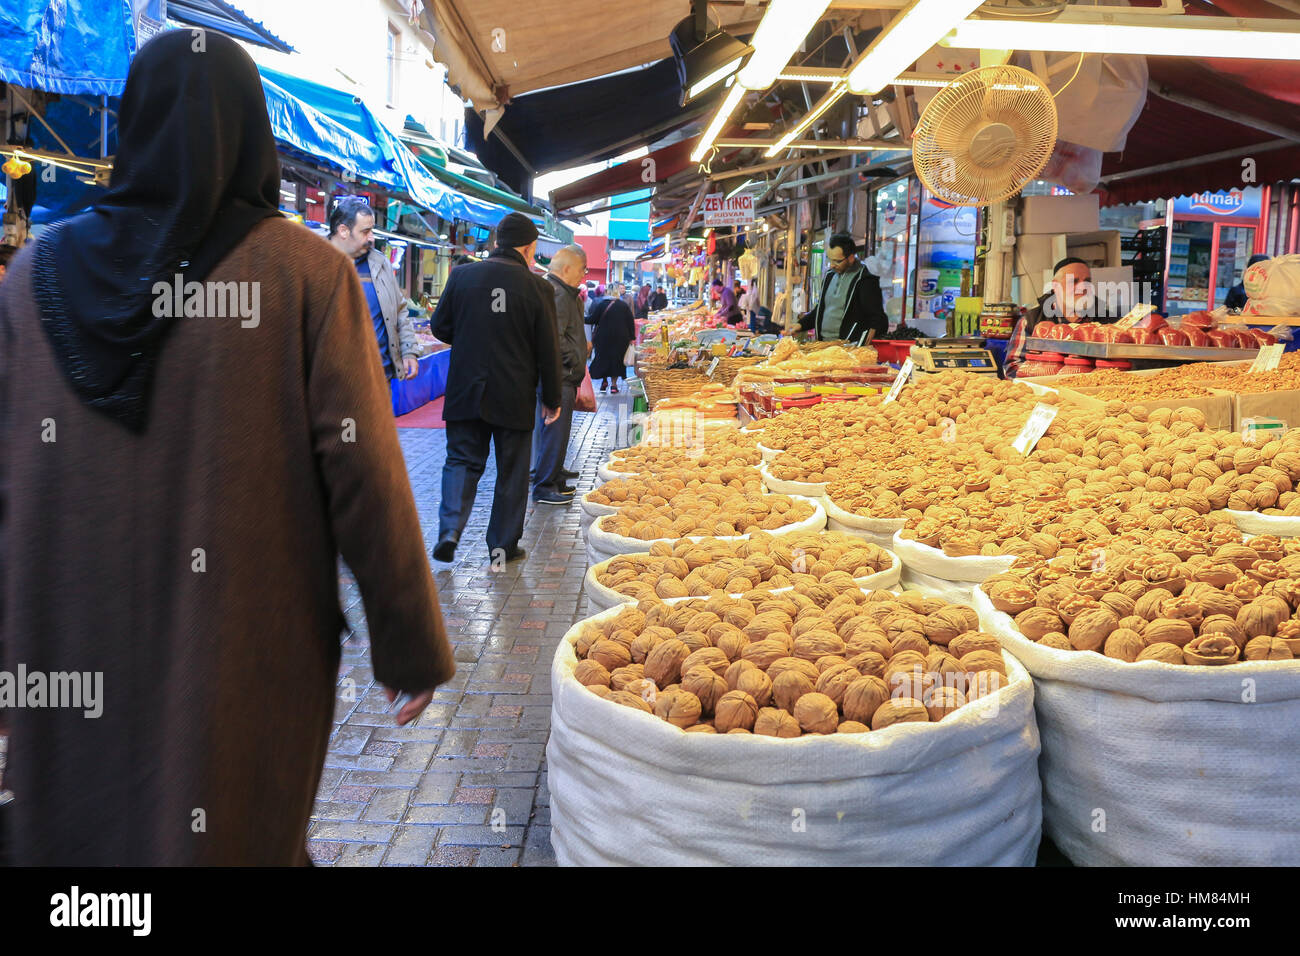 Bursa, Turquie - 23 Février 2016 : stand vendant des noix comme les noix sur le marché libre en Bursa Turquie Banque D'Images